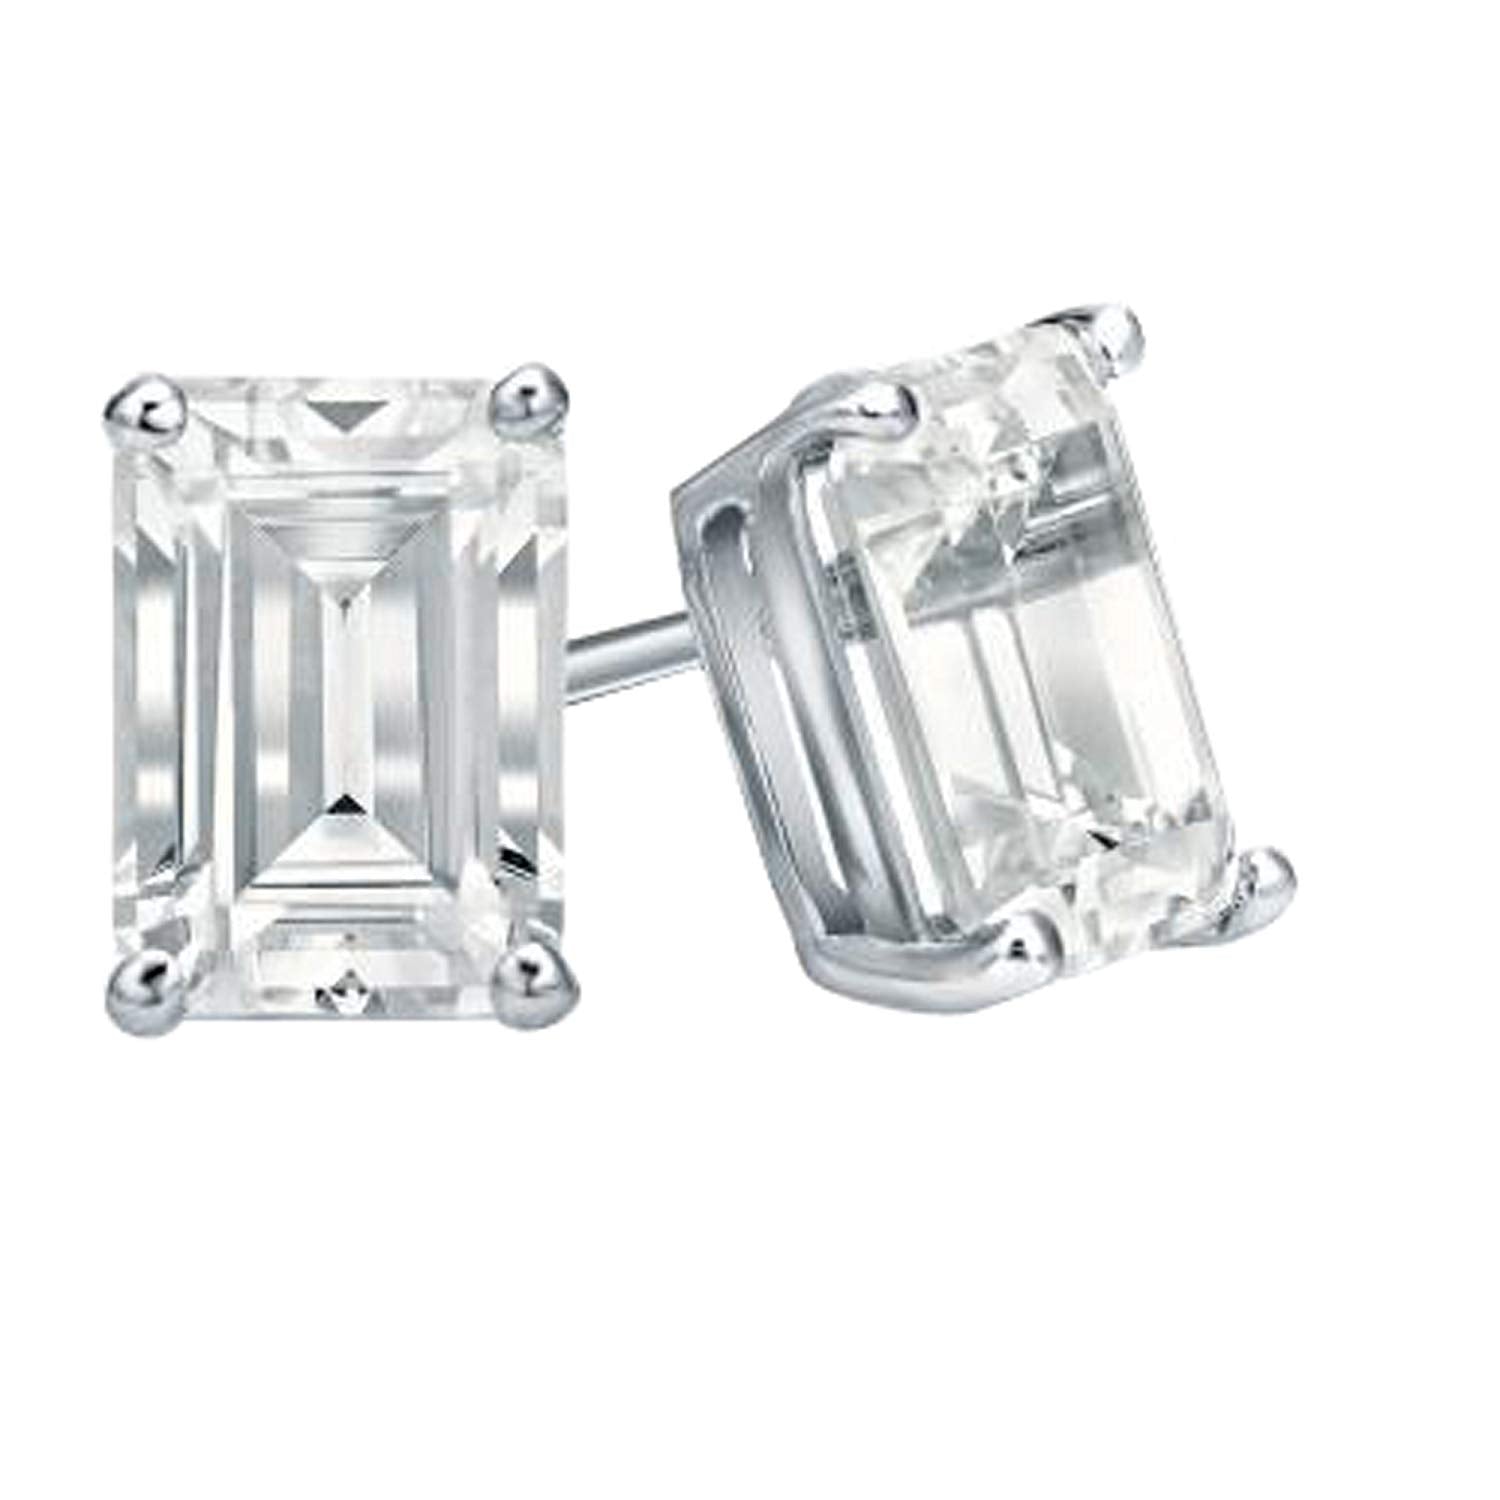 Details 72+ silver diamond earrings uk best